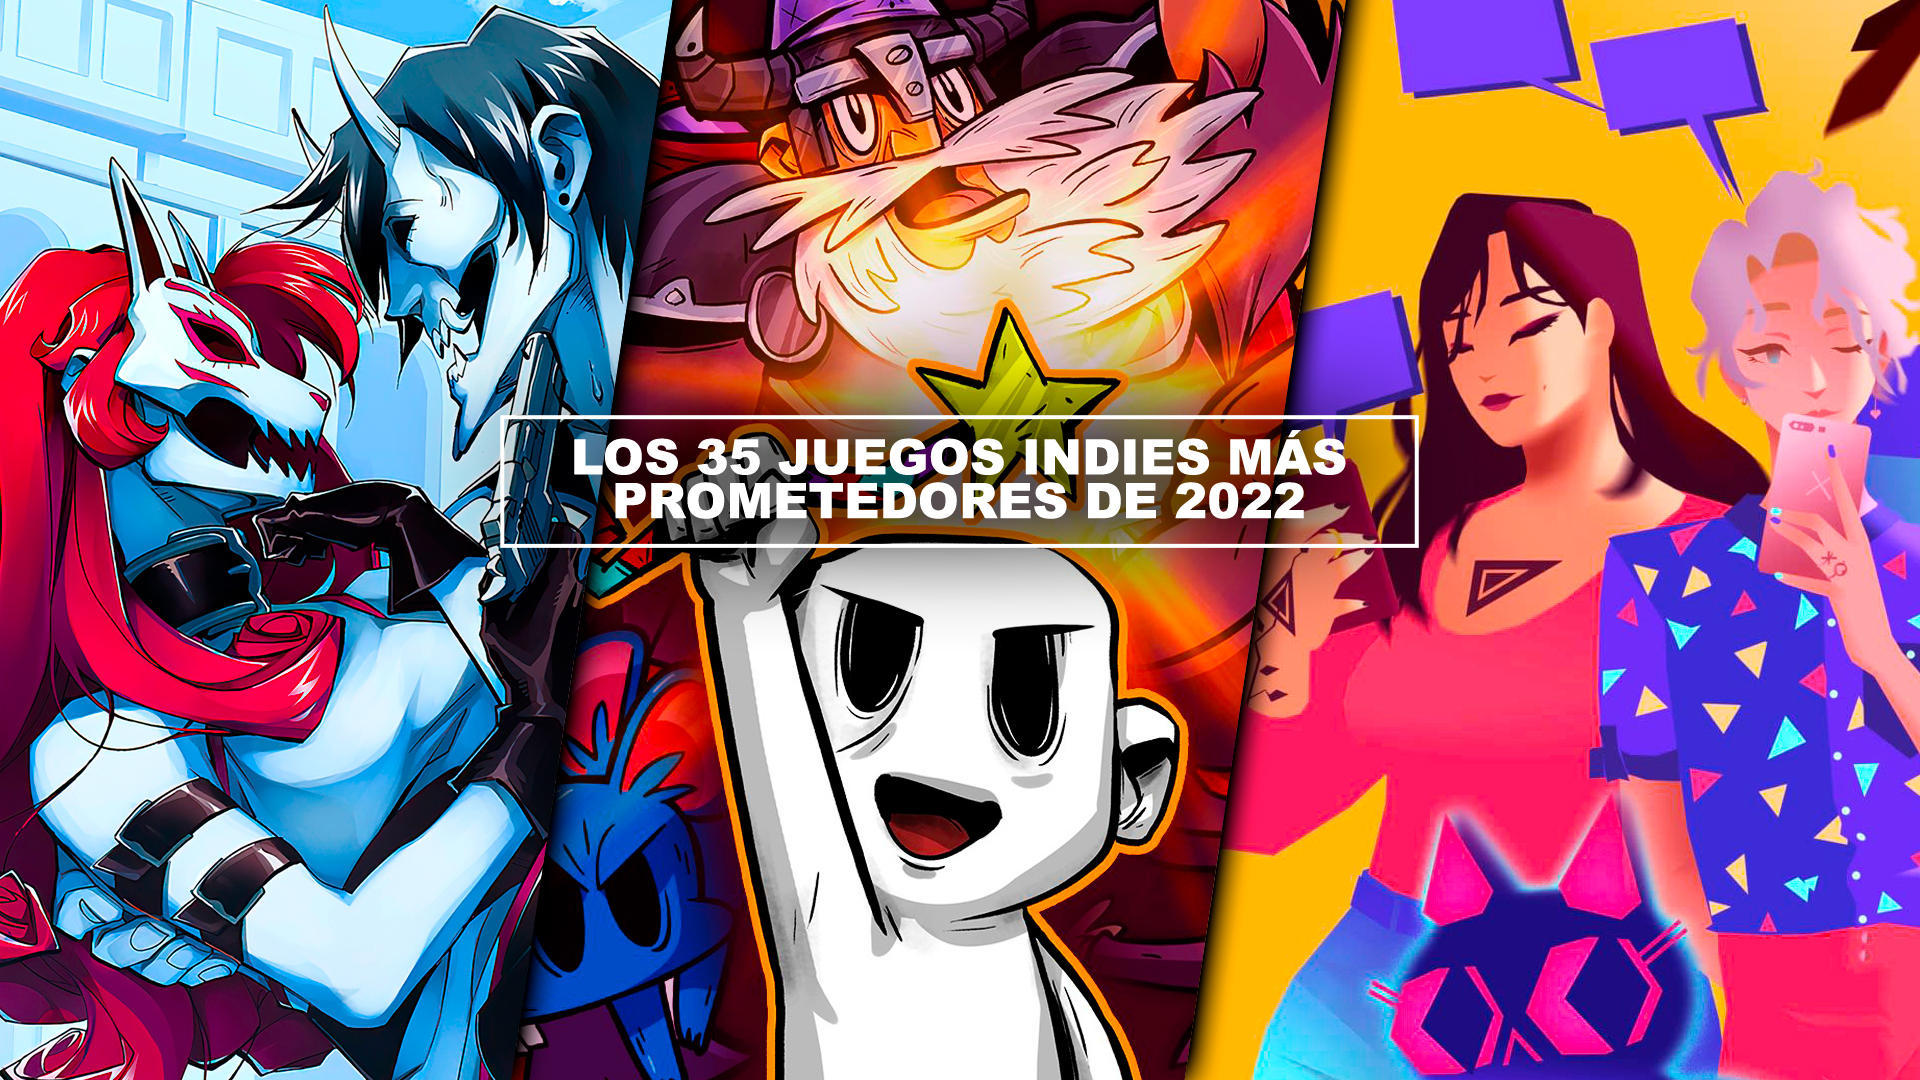 Los 35 juegos indies ms prometedores de 2022